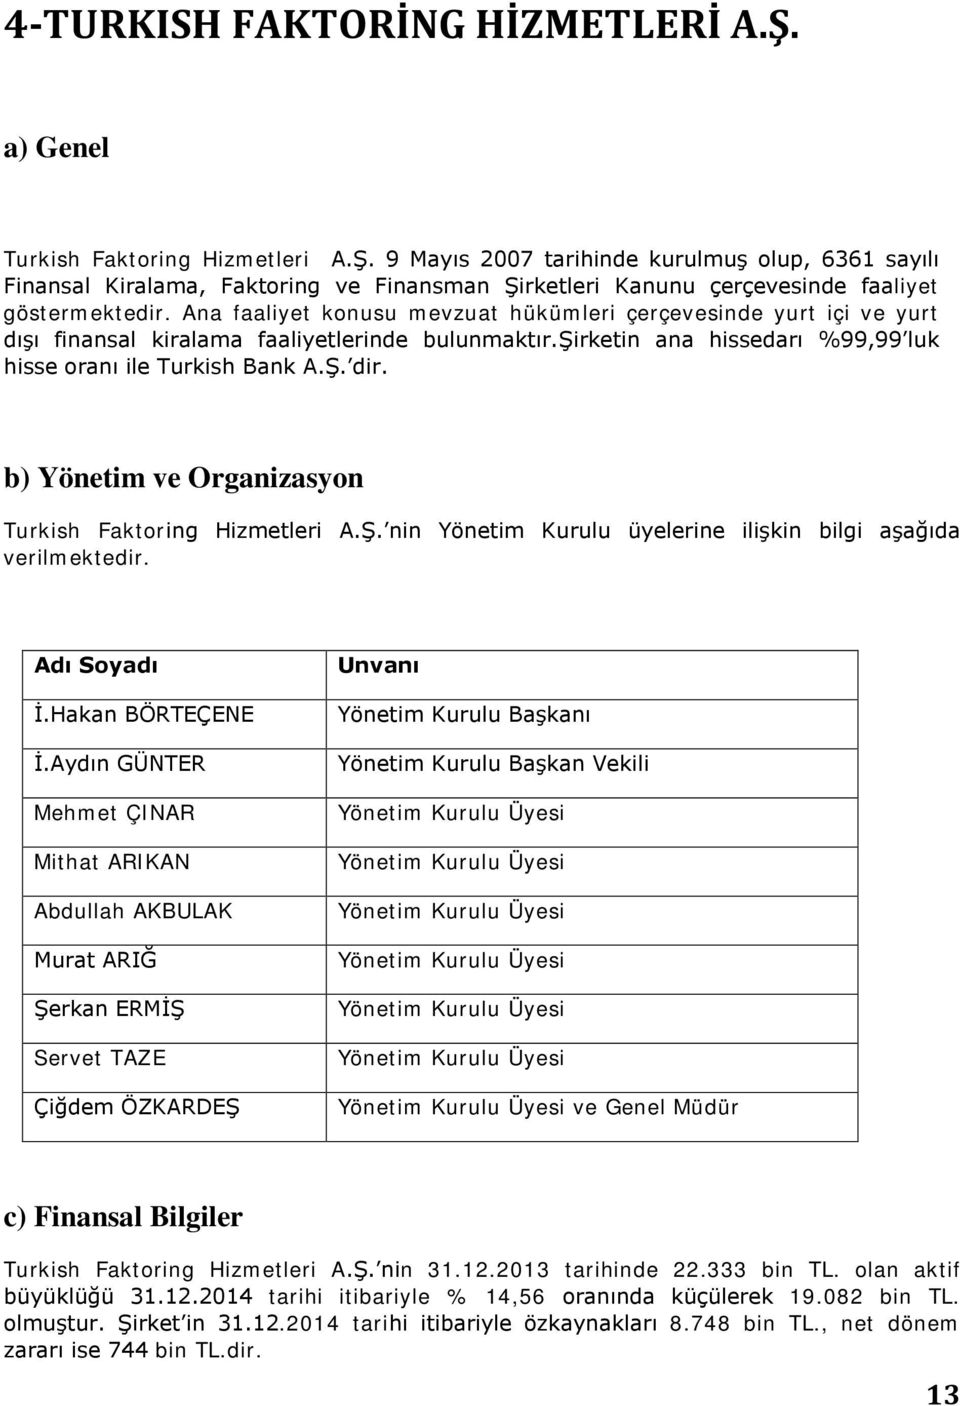 b) Yönetim ve Organizasyon Turkish Faktoring Hizmetleri A.Ş. nin Yönetim Kurulu üyelerine ilişkin bilgi aşağıda verilmektedir. Adı Soyadı İ.Hakan BÖRTEÇENE İ.